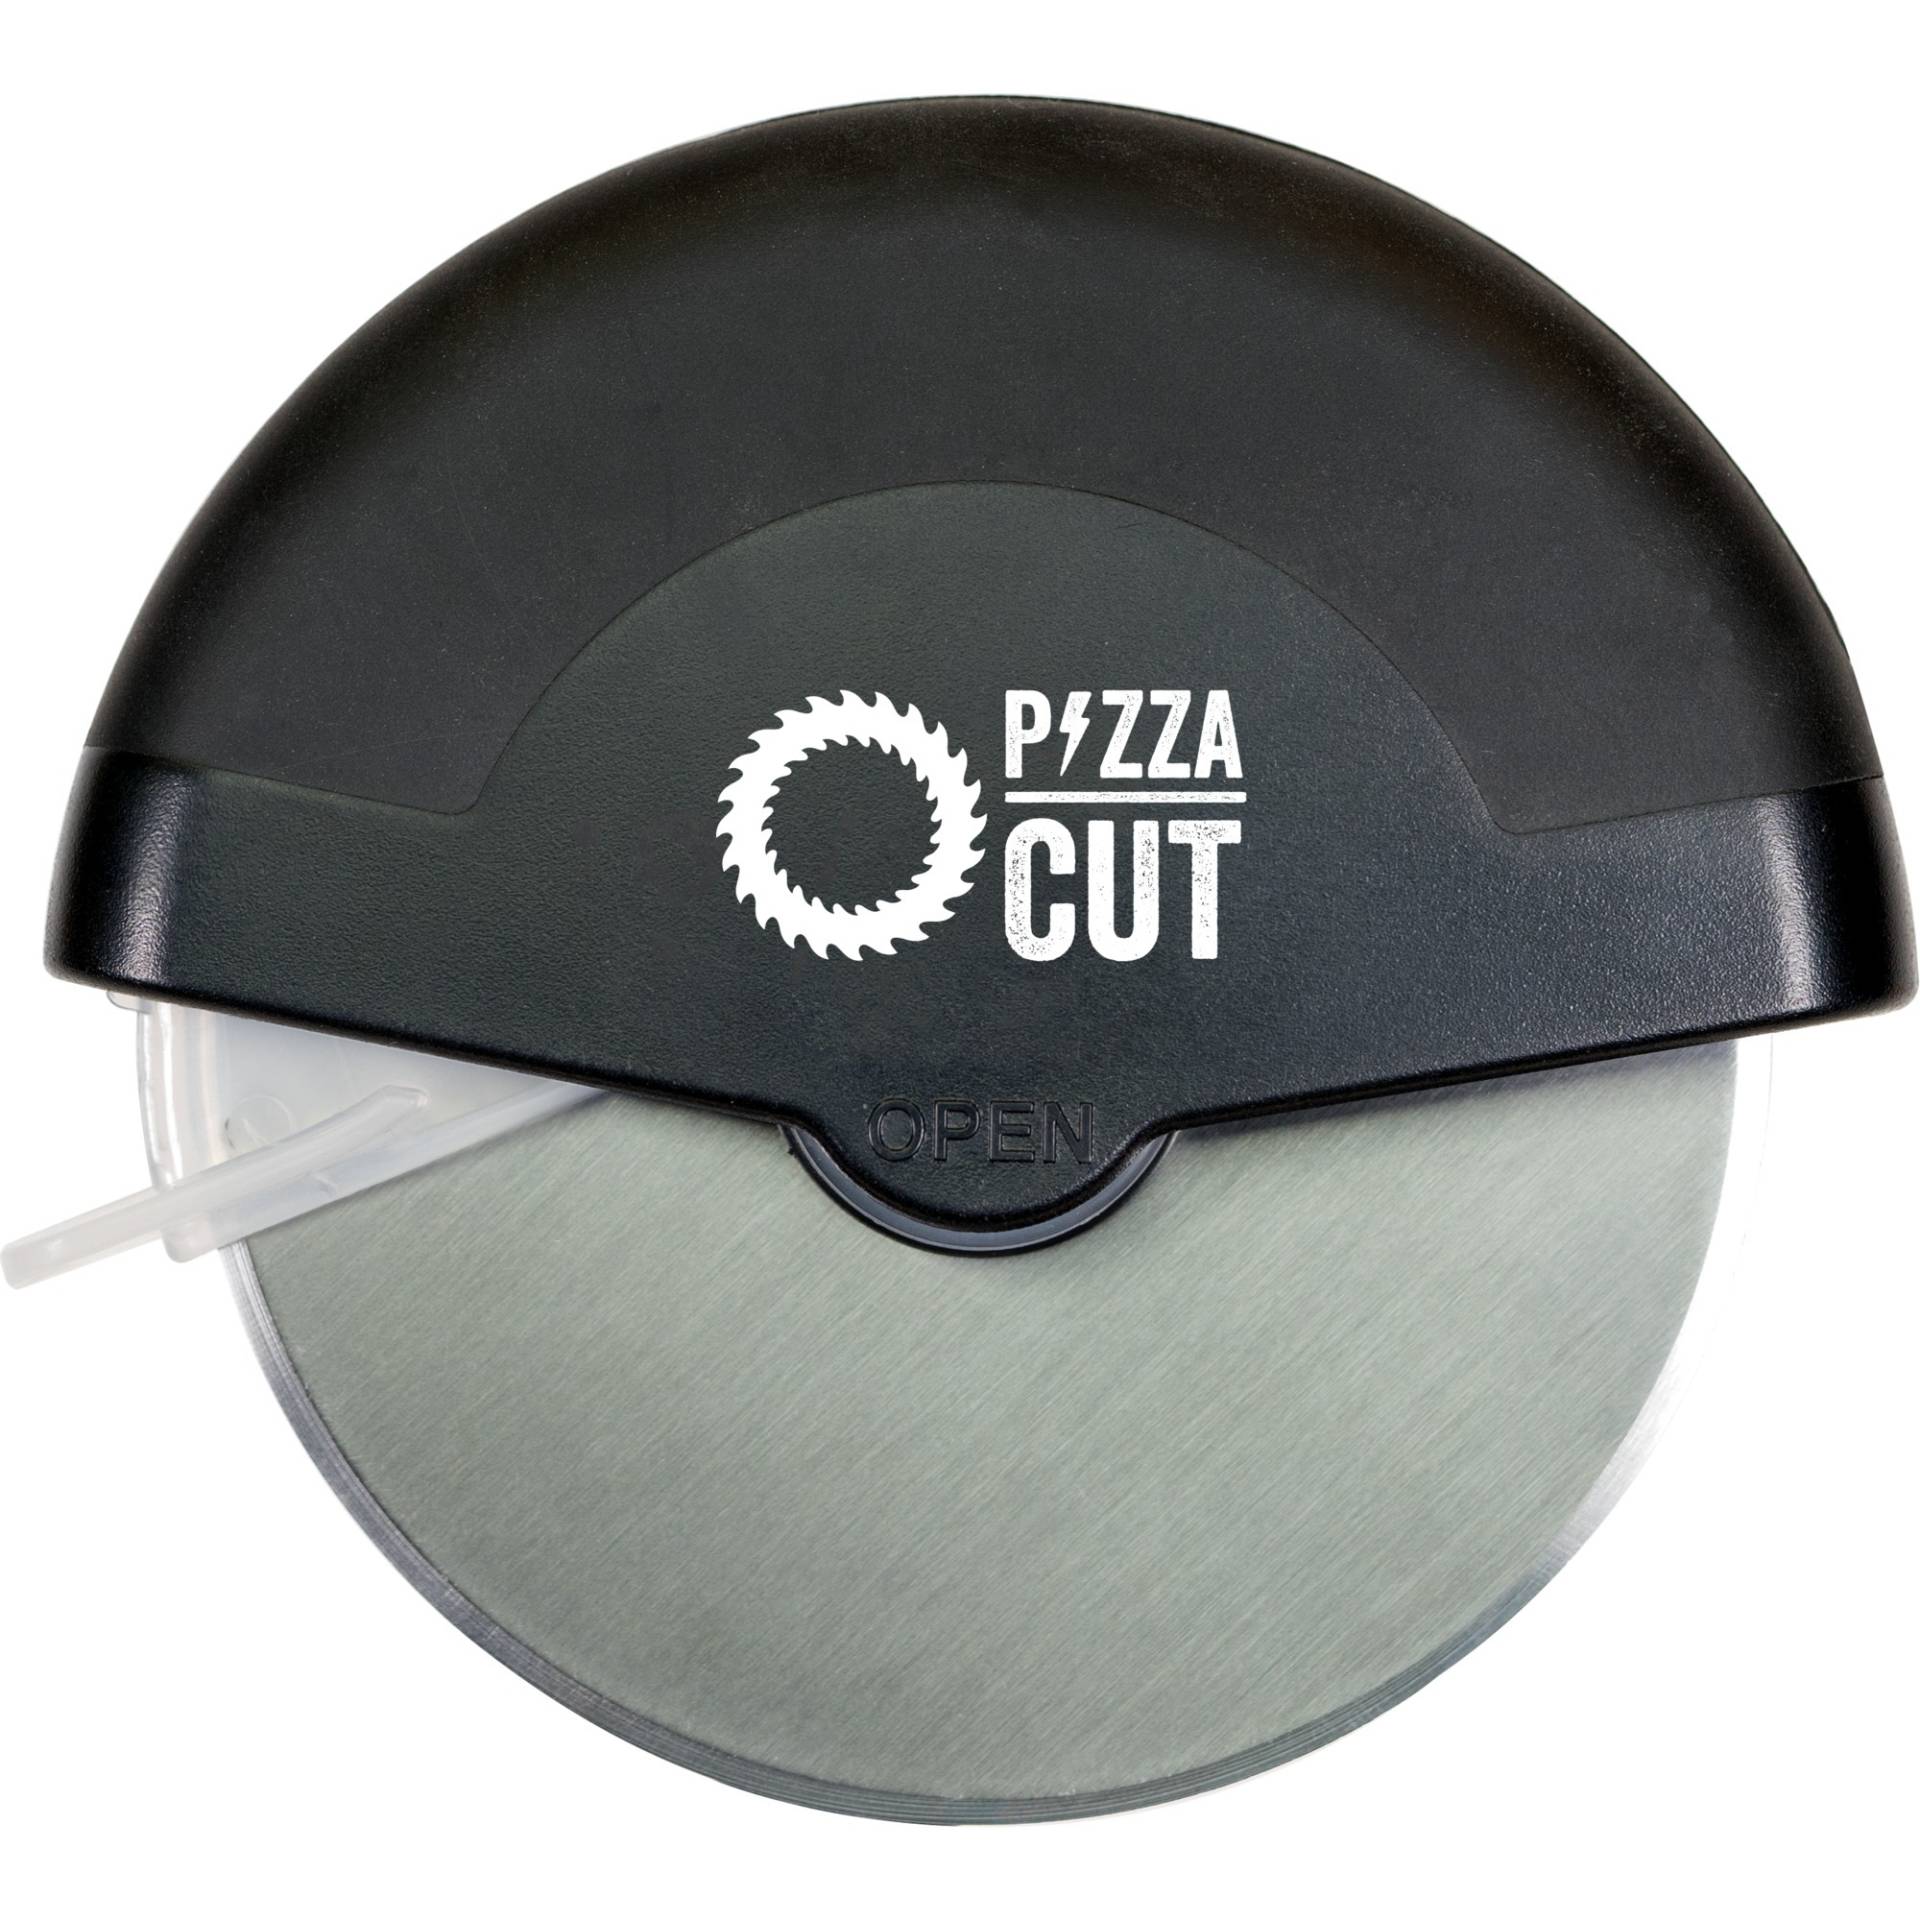 PizzaCut Vol. 2 Pizzaschneider, Messer von Moesta